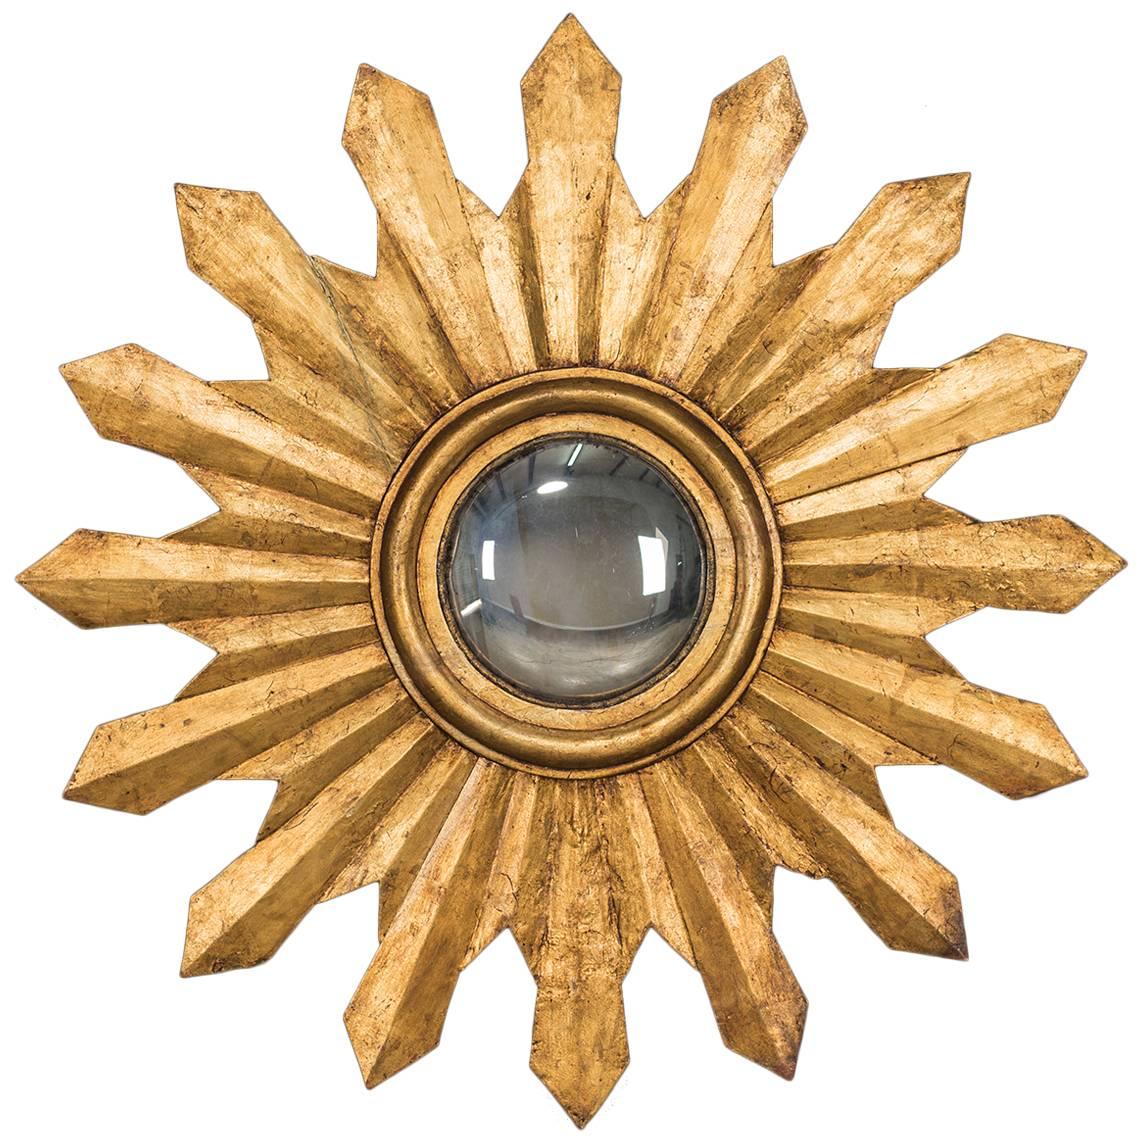 Antique Italian Starburst Convex Gold Leaf Mirror, circa 1880